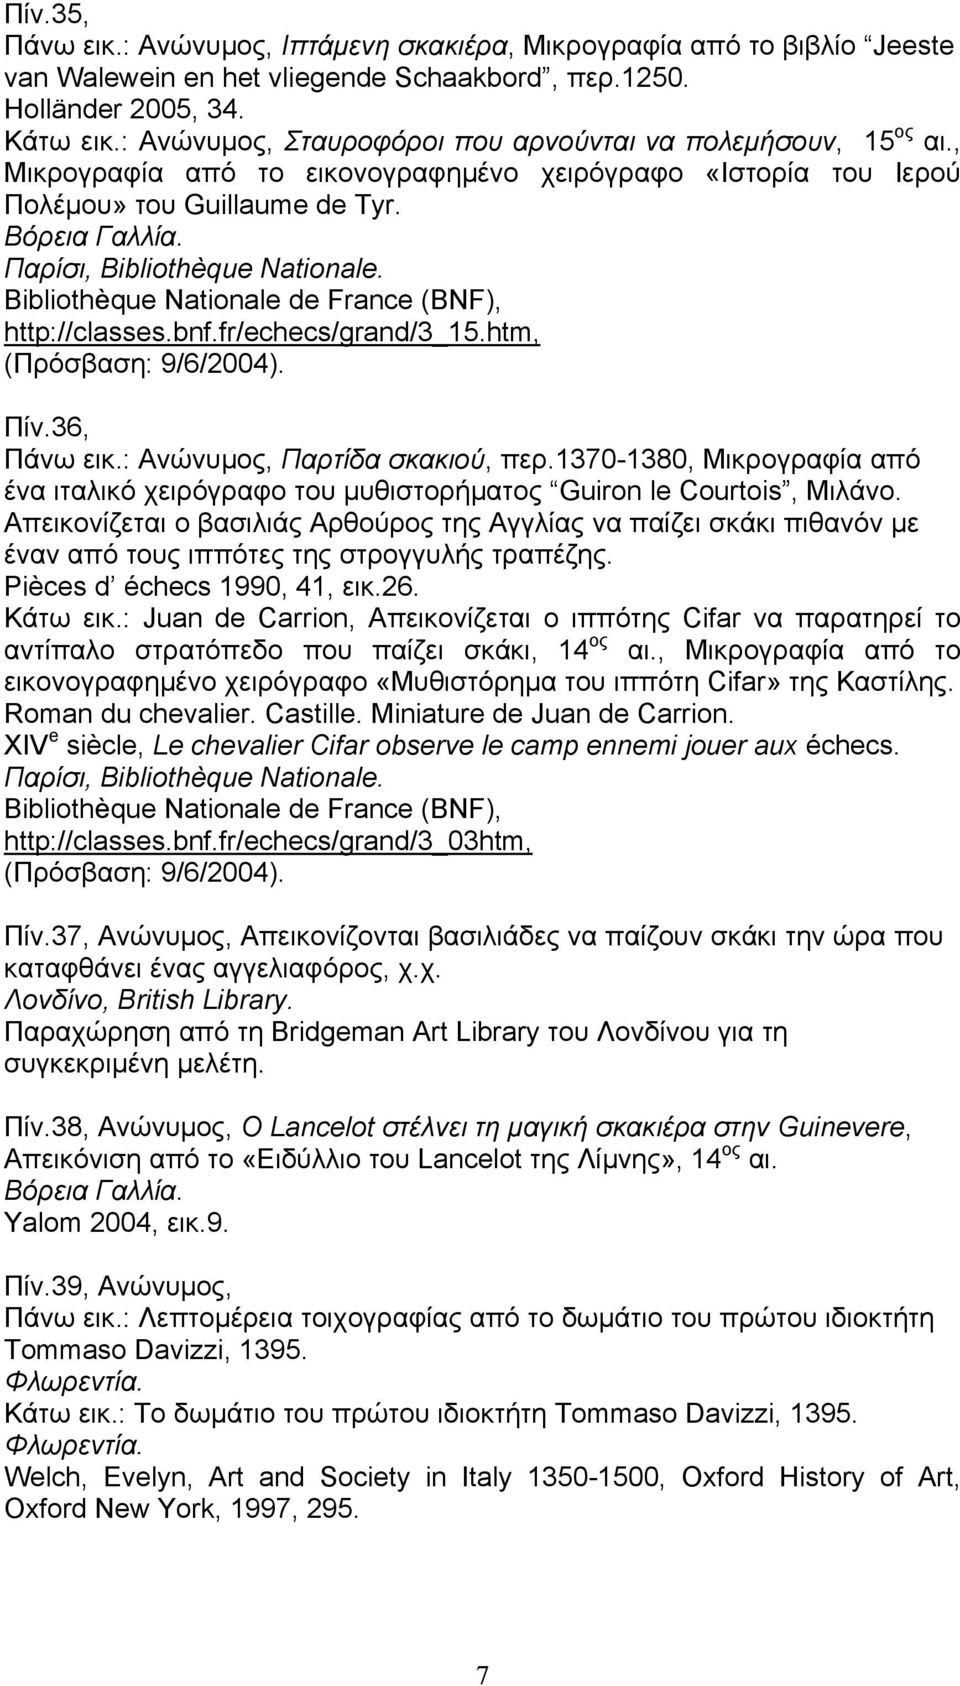 Παρίσι, Bibliothèque Nationale. Bibliothèque Nationale de France (BNF), http://classes.bnf.fr/echecs/grand/3_15.htm, (Πρόσβαση: 9/6/2004). Πίν.36, Πάνω εικ.: Ανώνυµος, Παρτίδα σκακιού, περ.